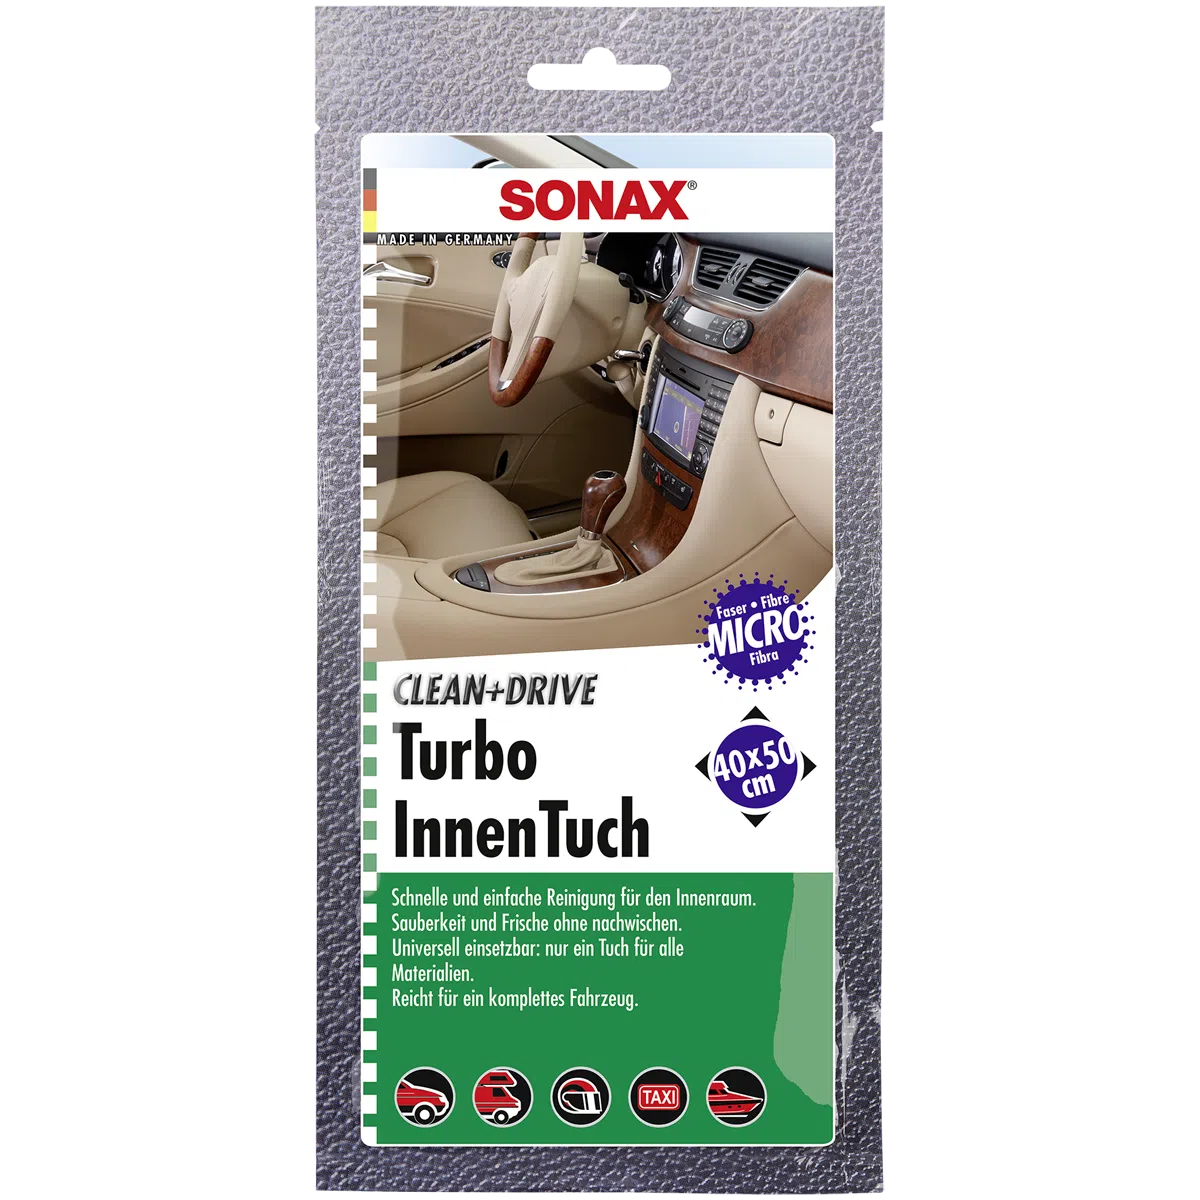 Sonax Clean und Drive Turboinnentuch